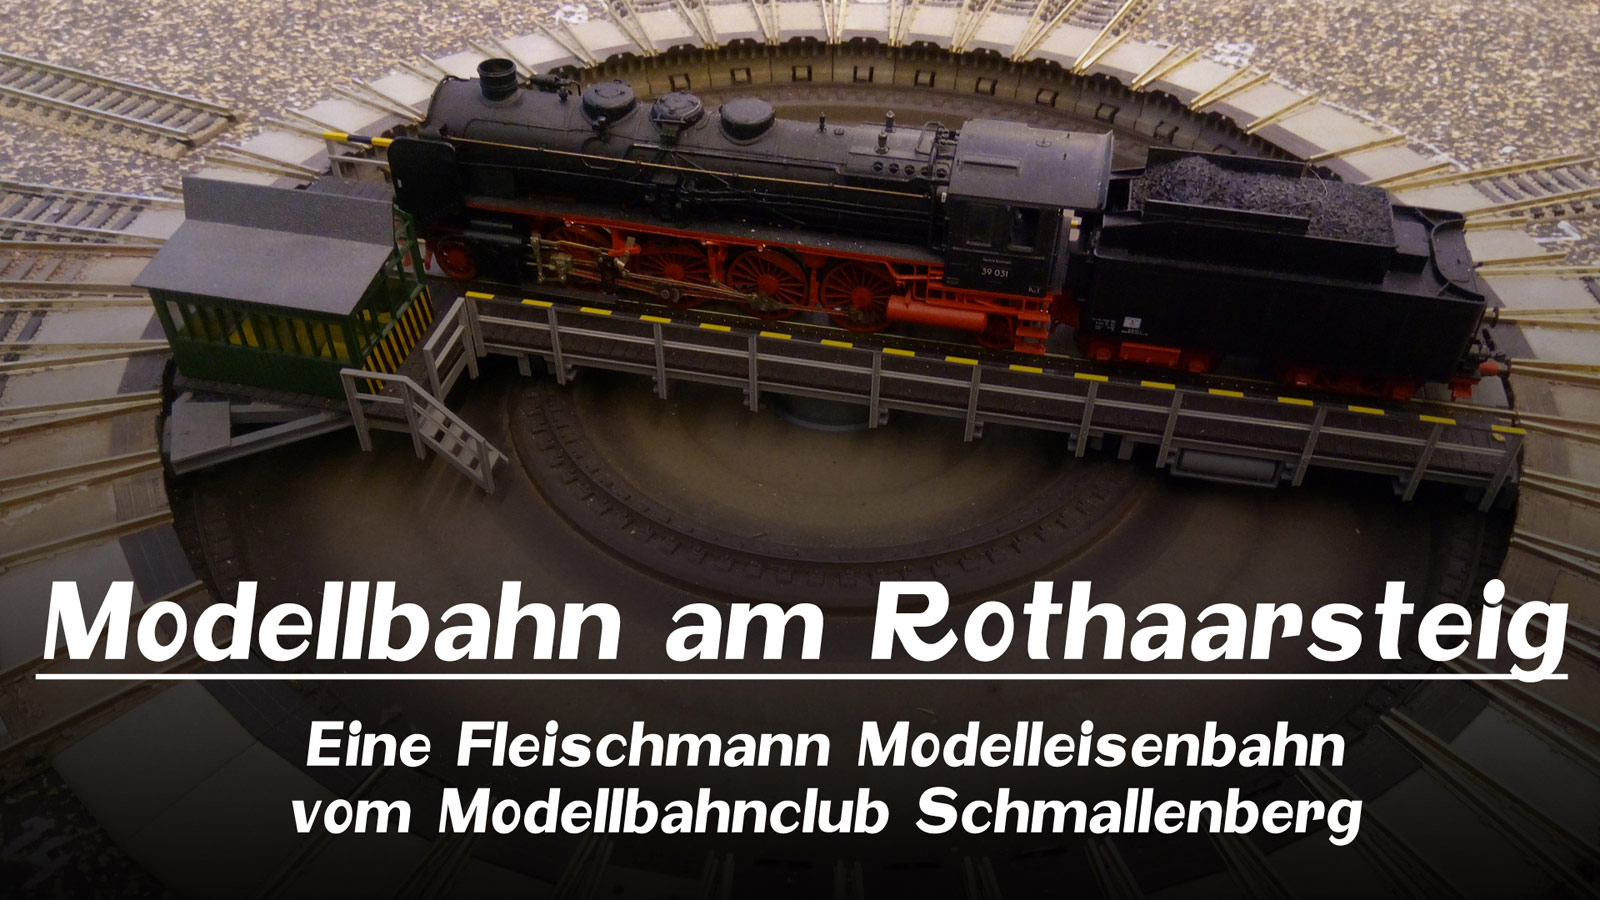 Pennula bei Prime Video: Modellbahn am Rothaarsteig - Eine Fleischmann Modelleisenbahn vom Modellbahnclub Schmallenberg